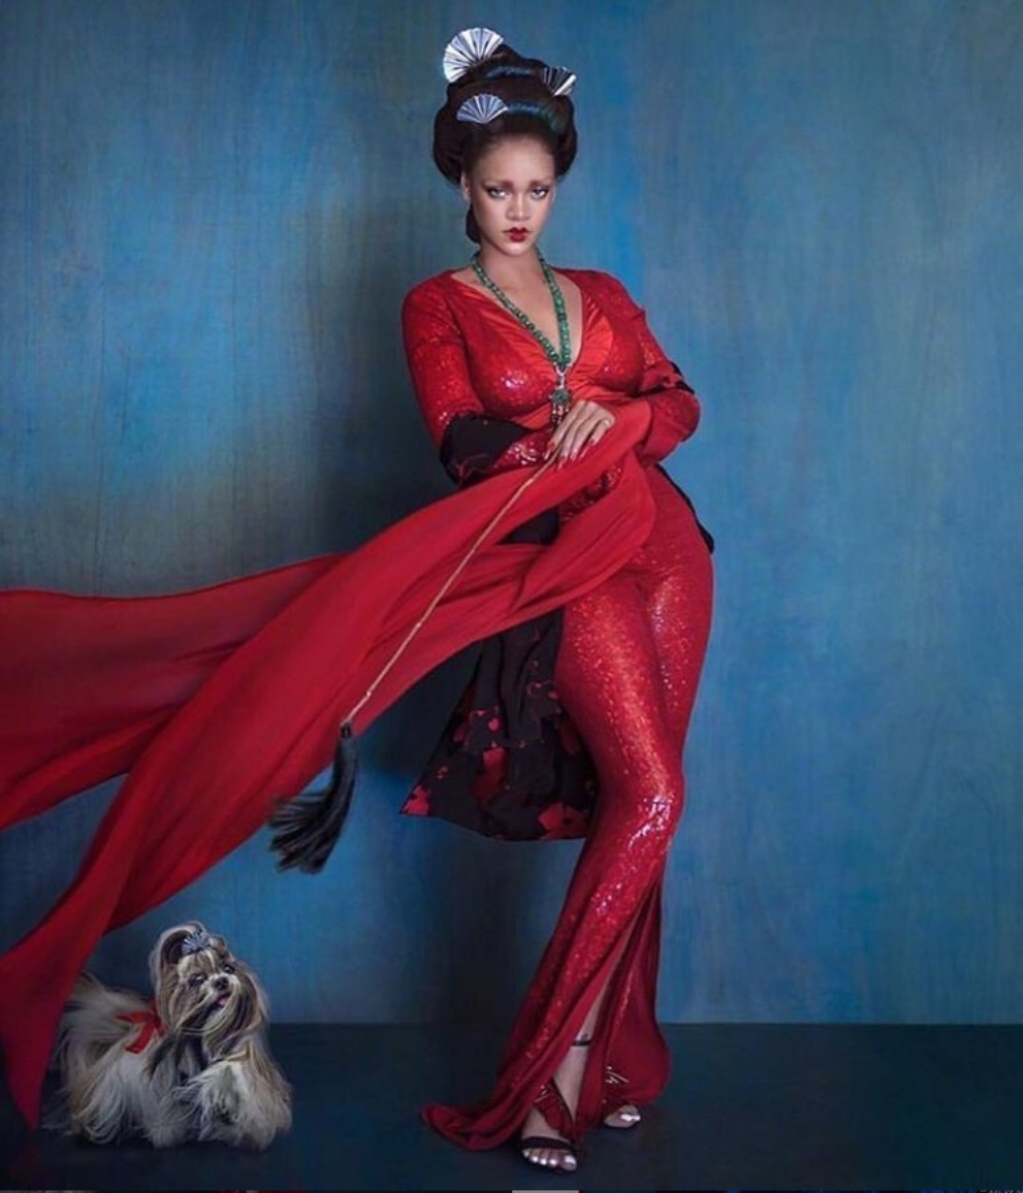 Rihanna protagoniza portada de revista con look de China